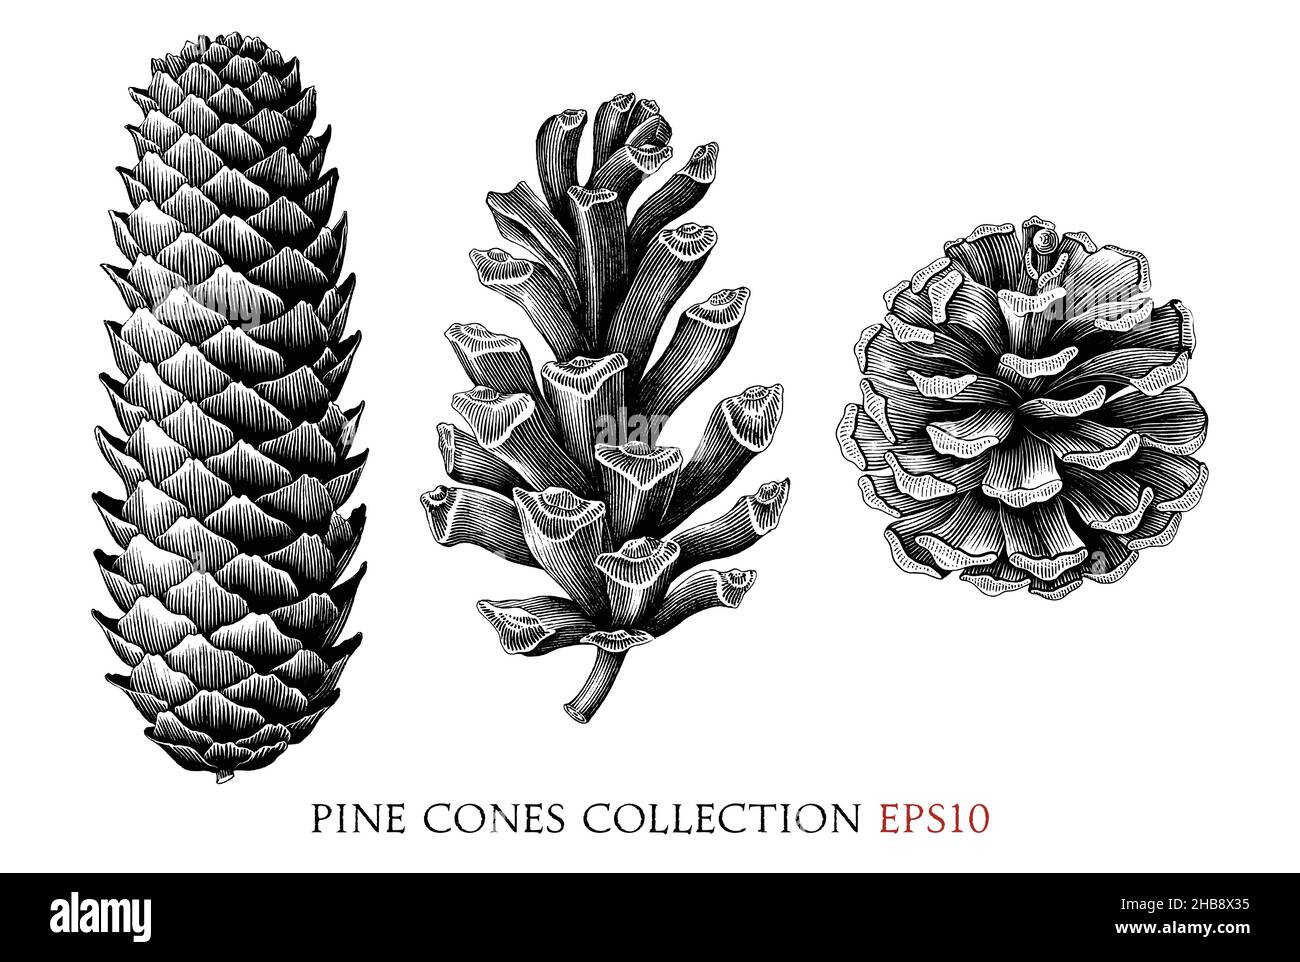 Collection de cônes de pin dessin à la main style gravure vintage clipart noir et blanc isolé sur fond blanc Illustration de Vecteur